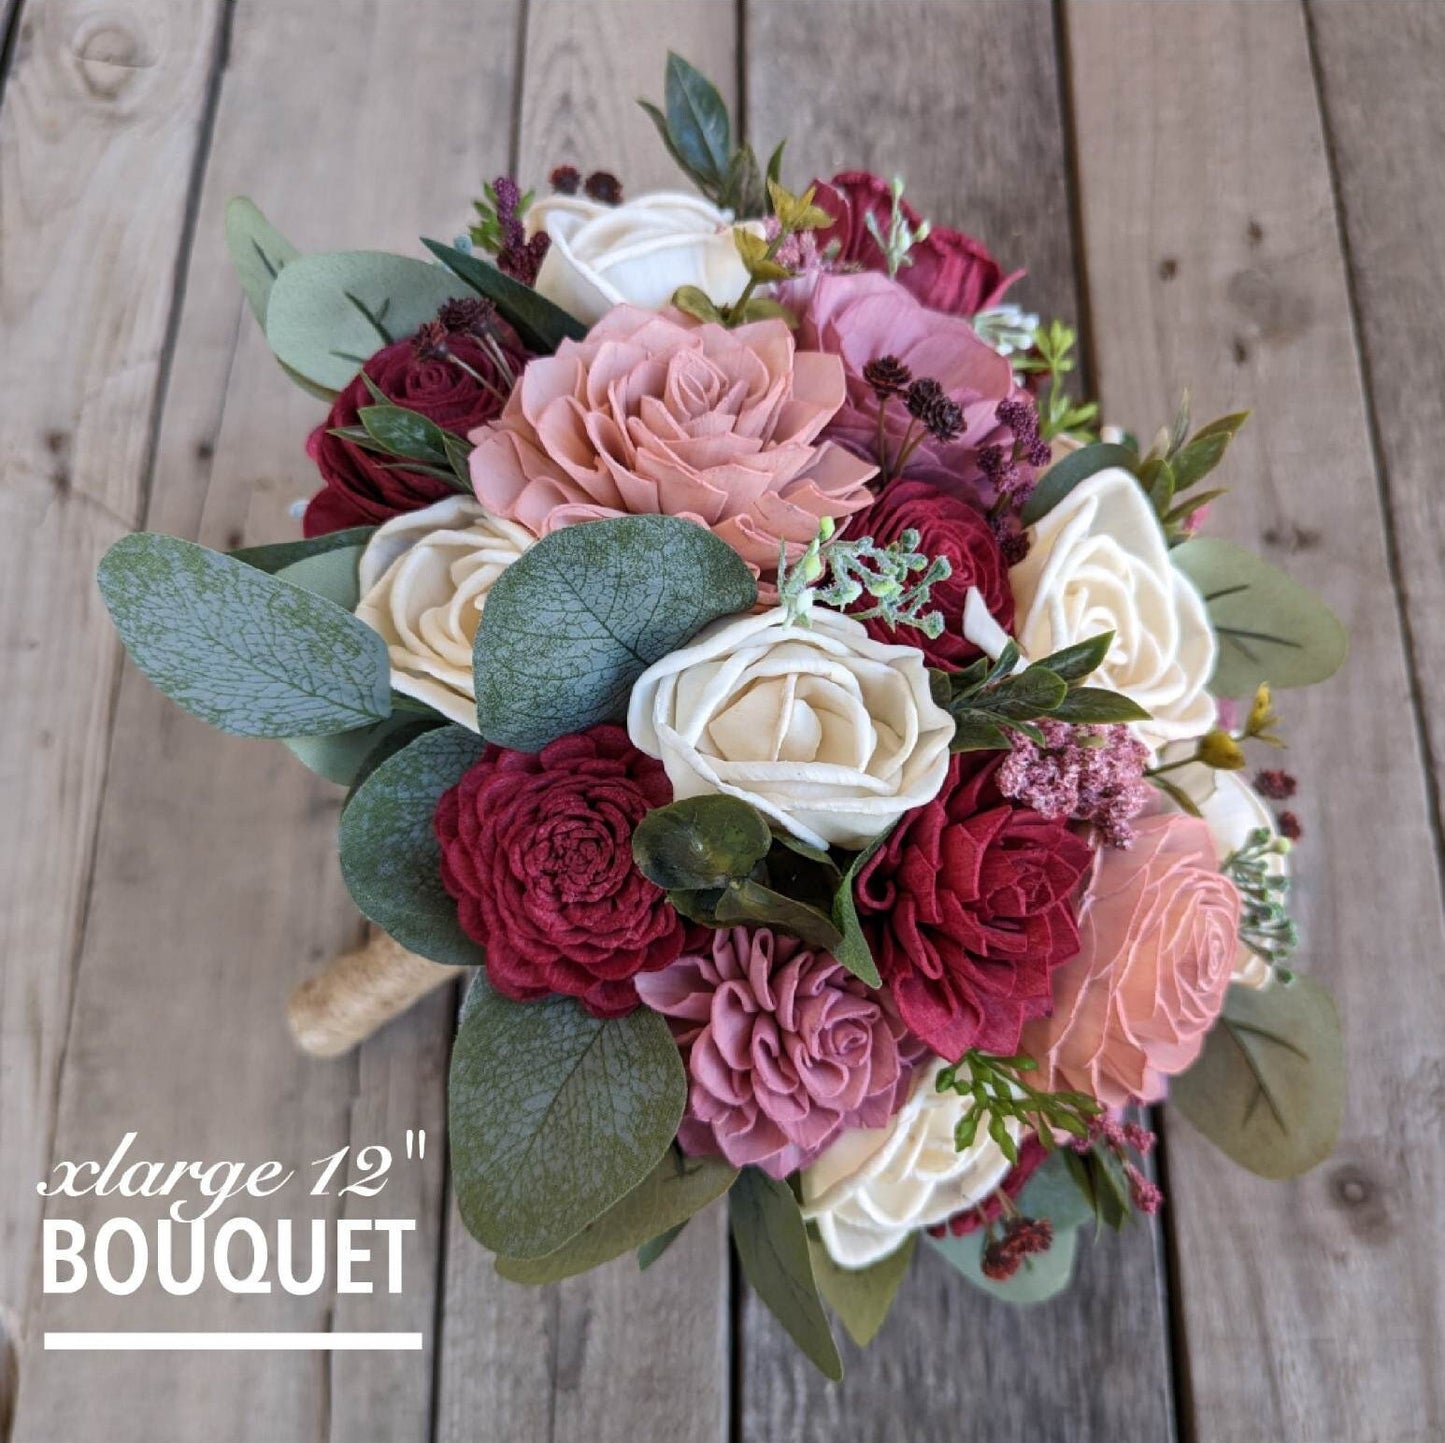 Wood Flower Bouquet with Burgundy & Dusty Rose Wooden Flowers, Burgundy Bridal Bouquet, Wood Wedding Flowers, Mauve Bride Bouquet